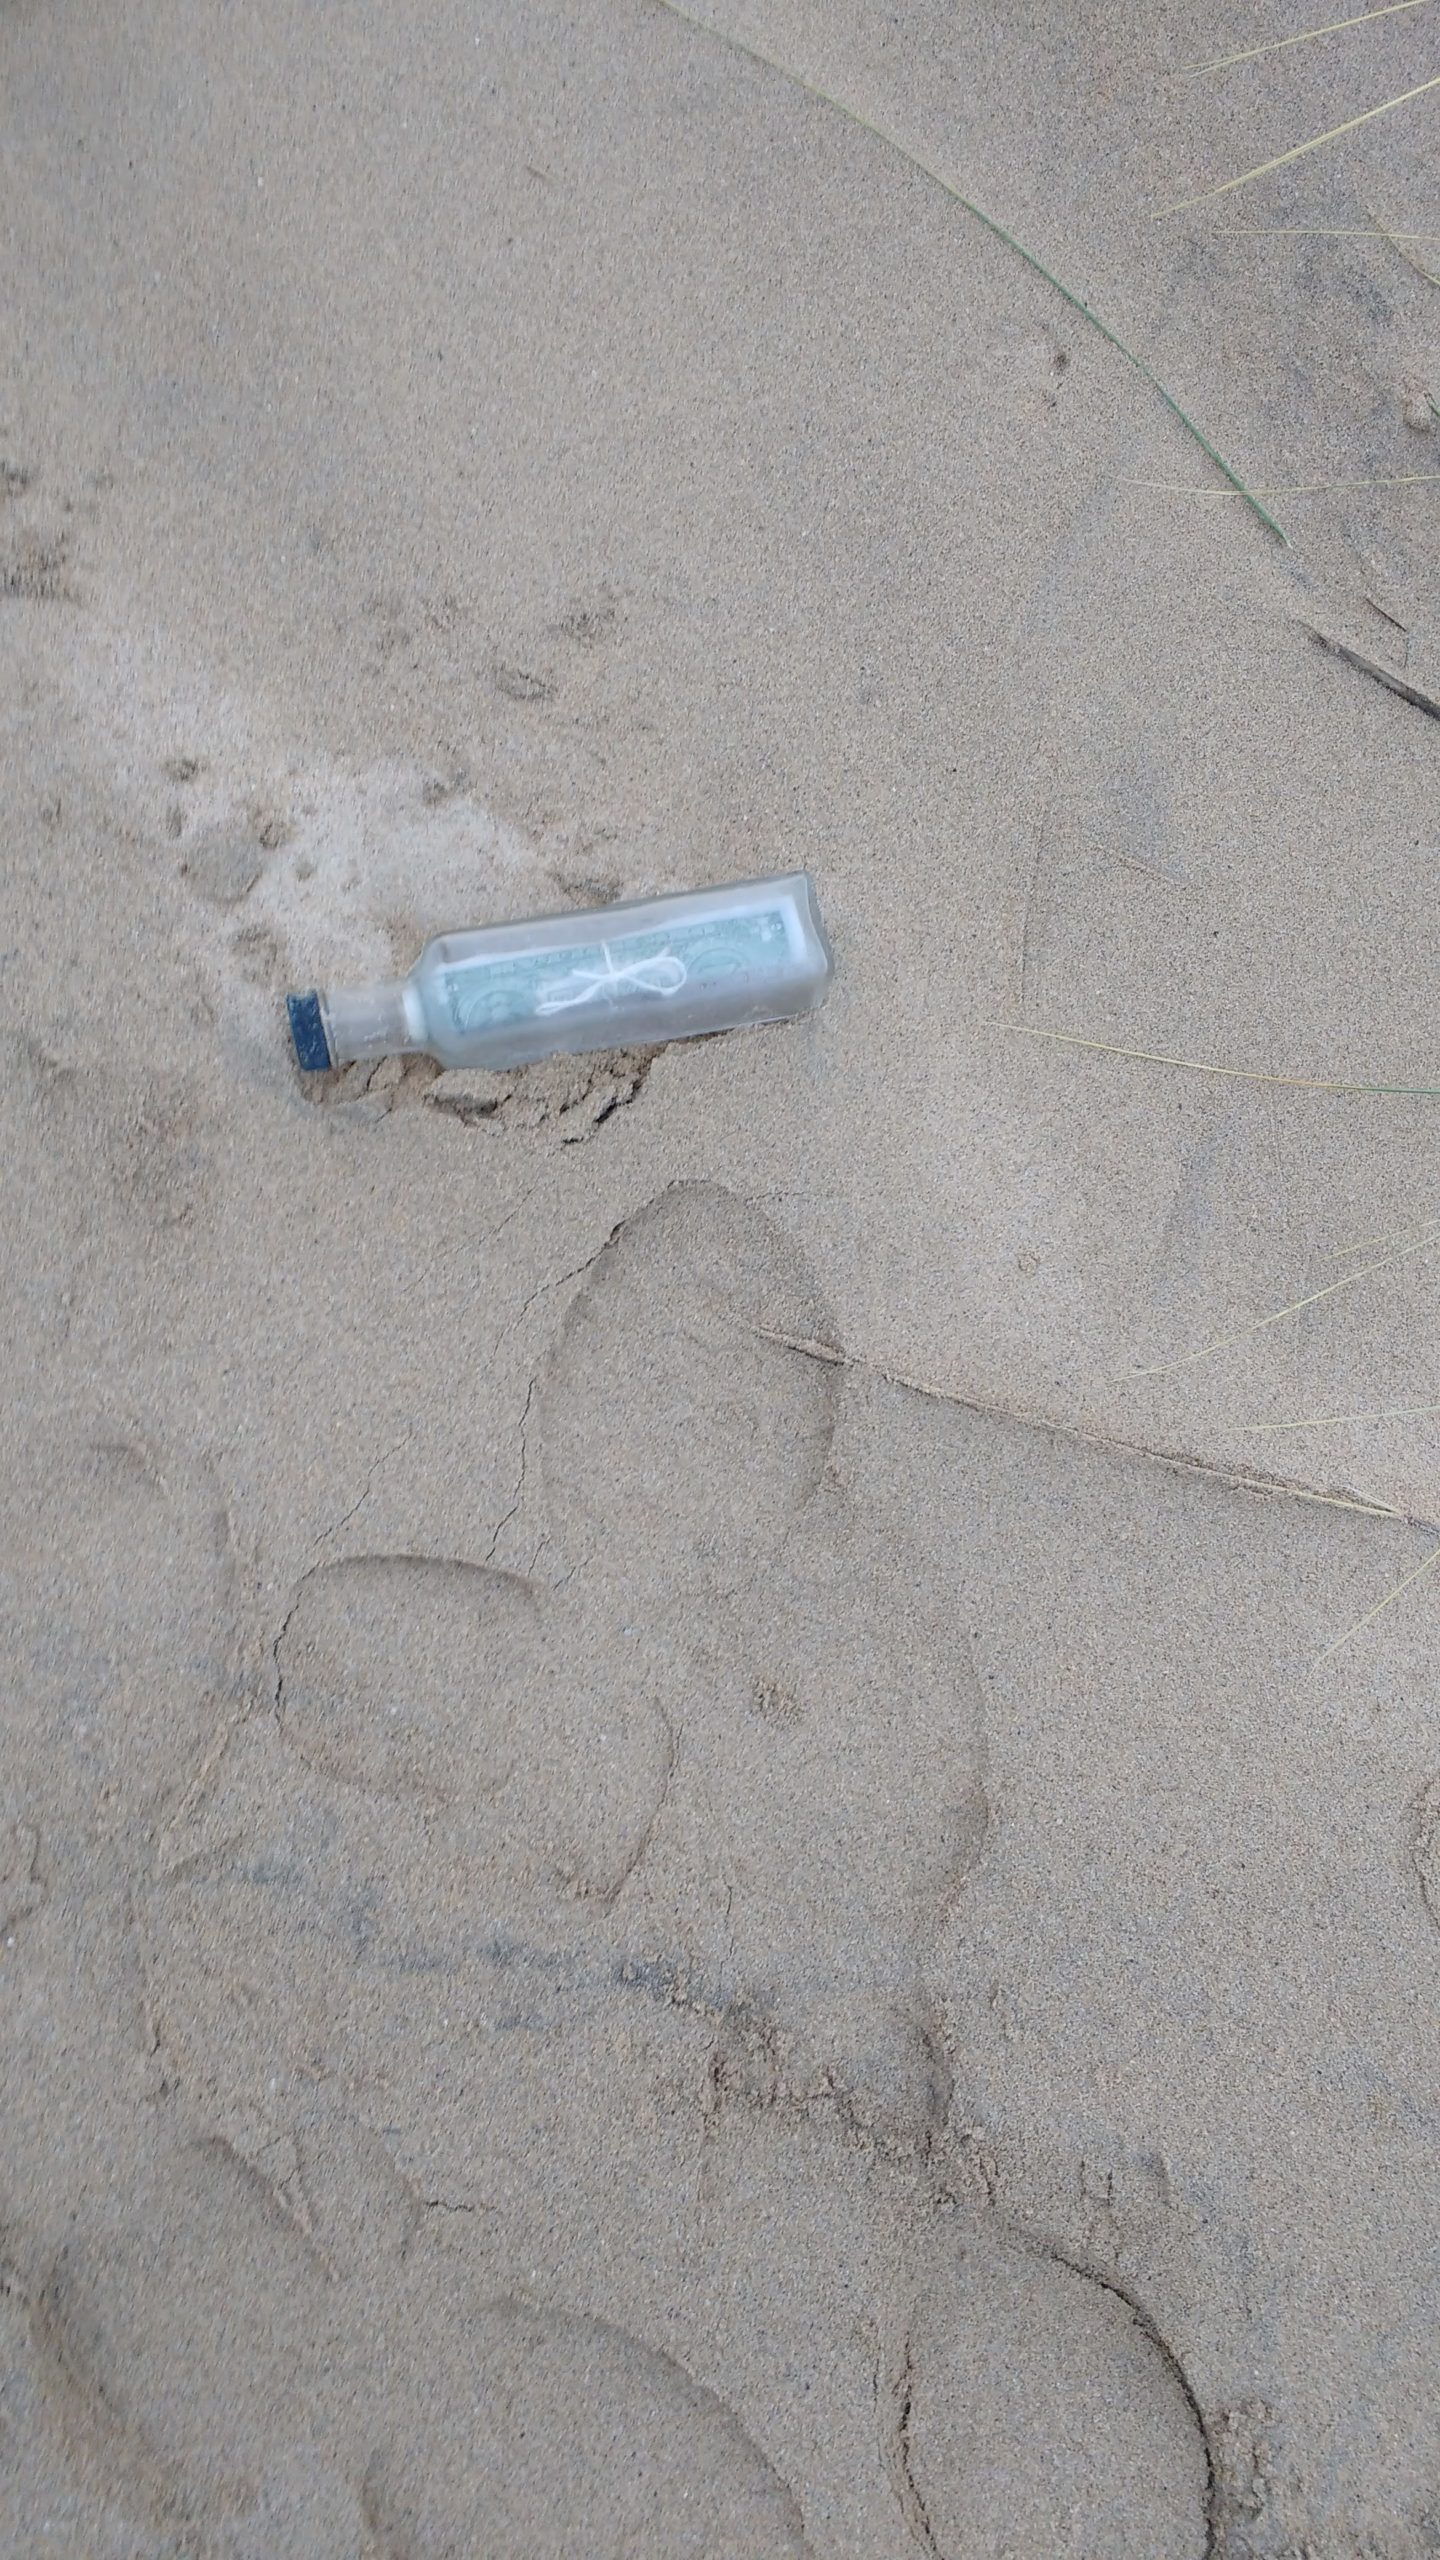 VIDEO: OCMD Message in Bottle Reaches Ireland Beach